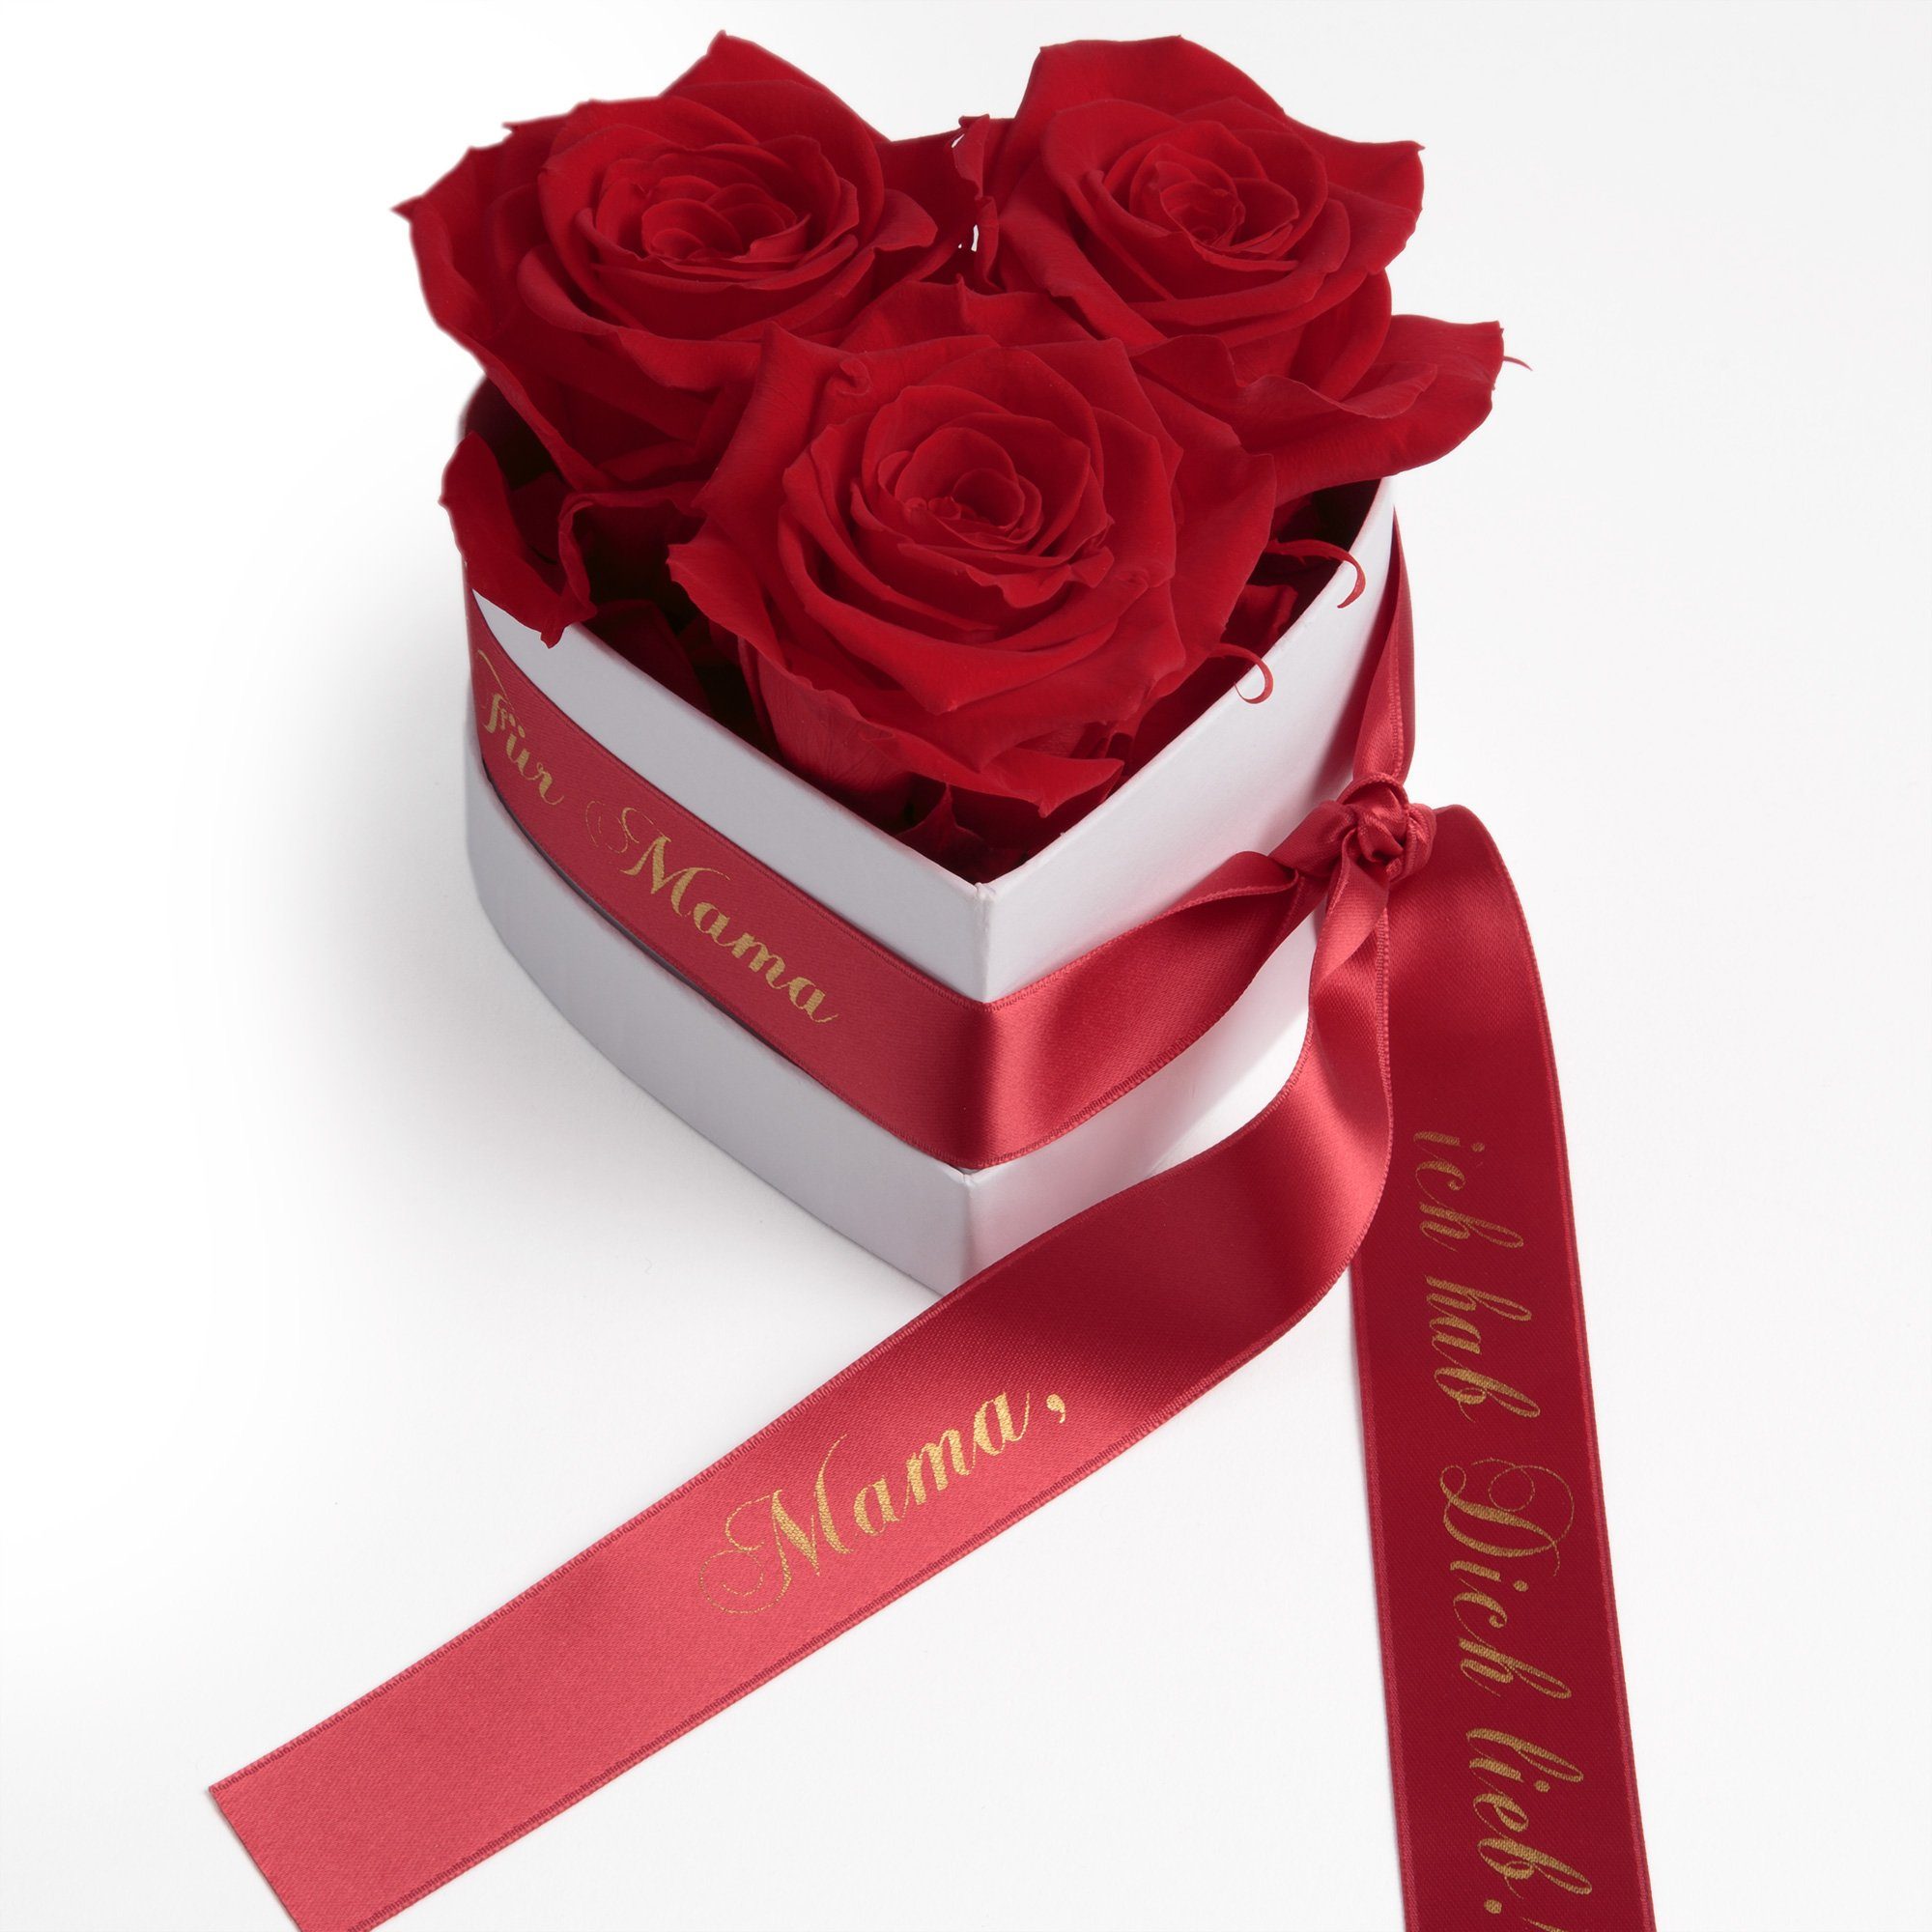 GRAVUR Liebes Geschenk Infinity Herz Rosenbox Rosenherz Ewige Rose konserviert 